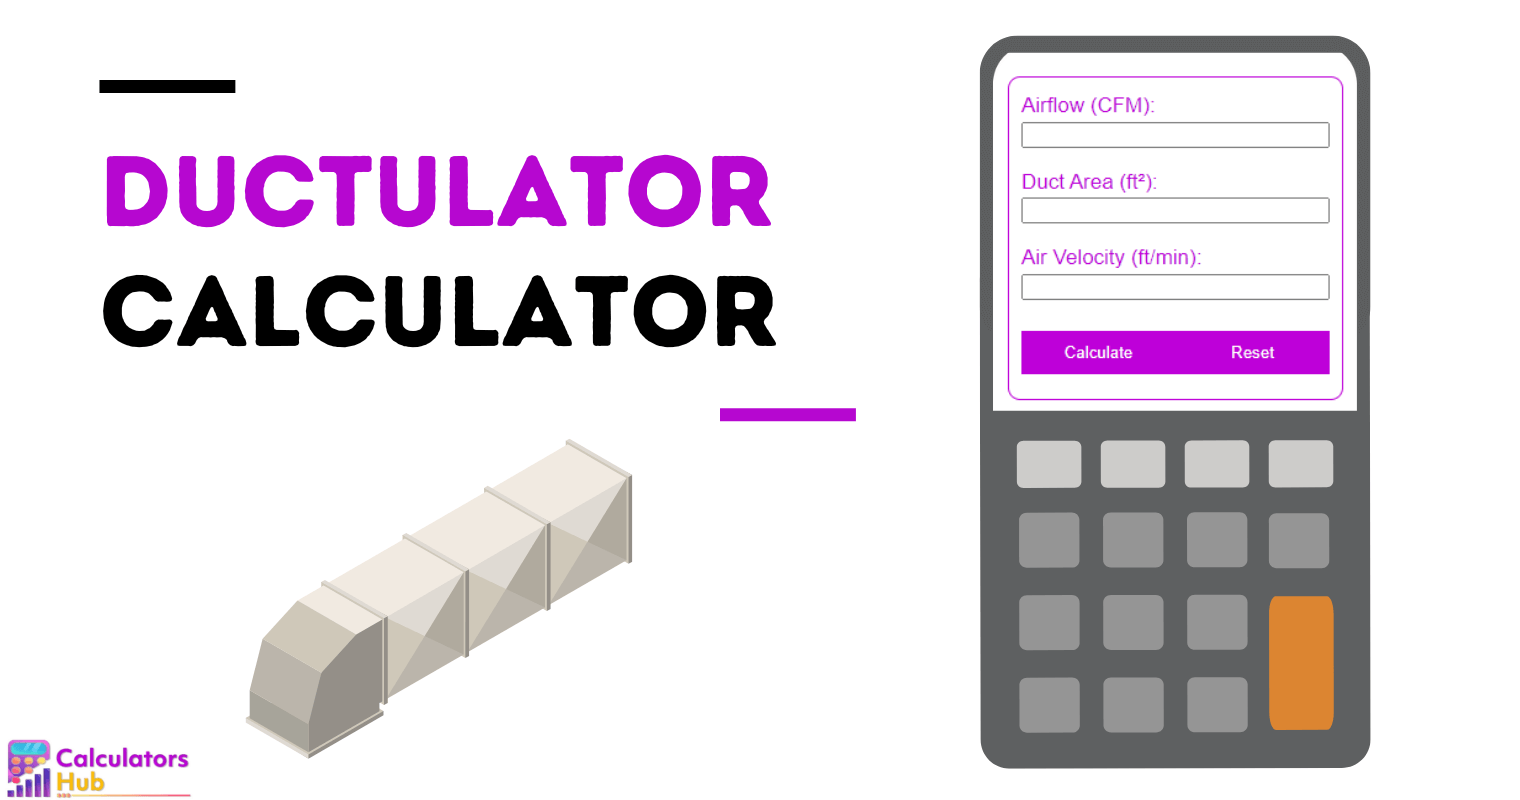 Ductulator Calculator